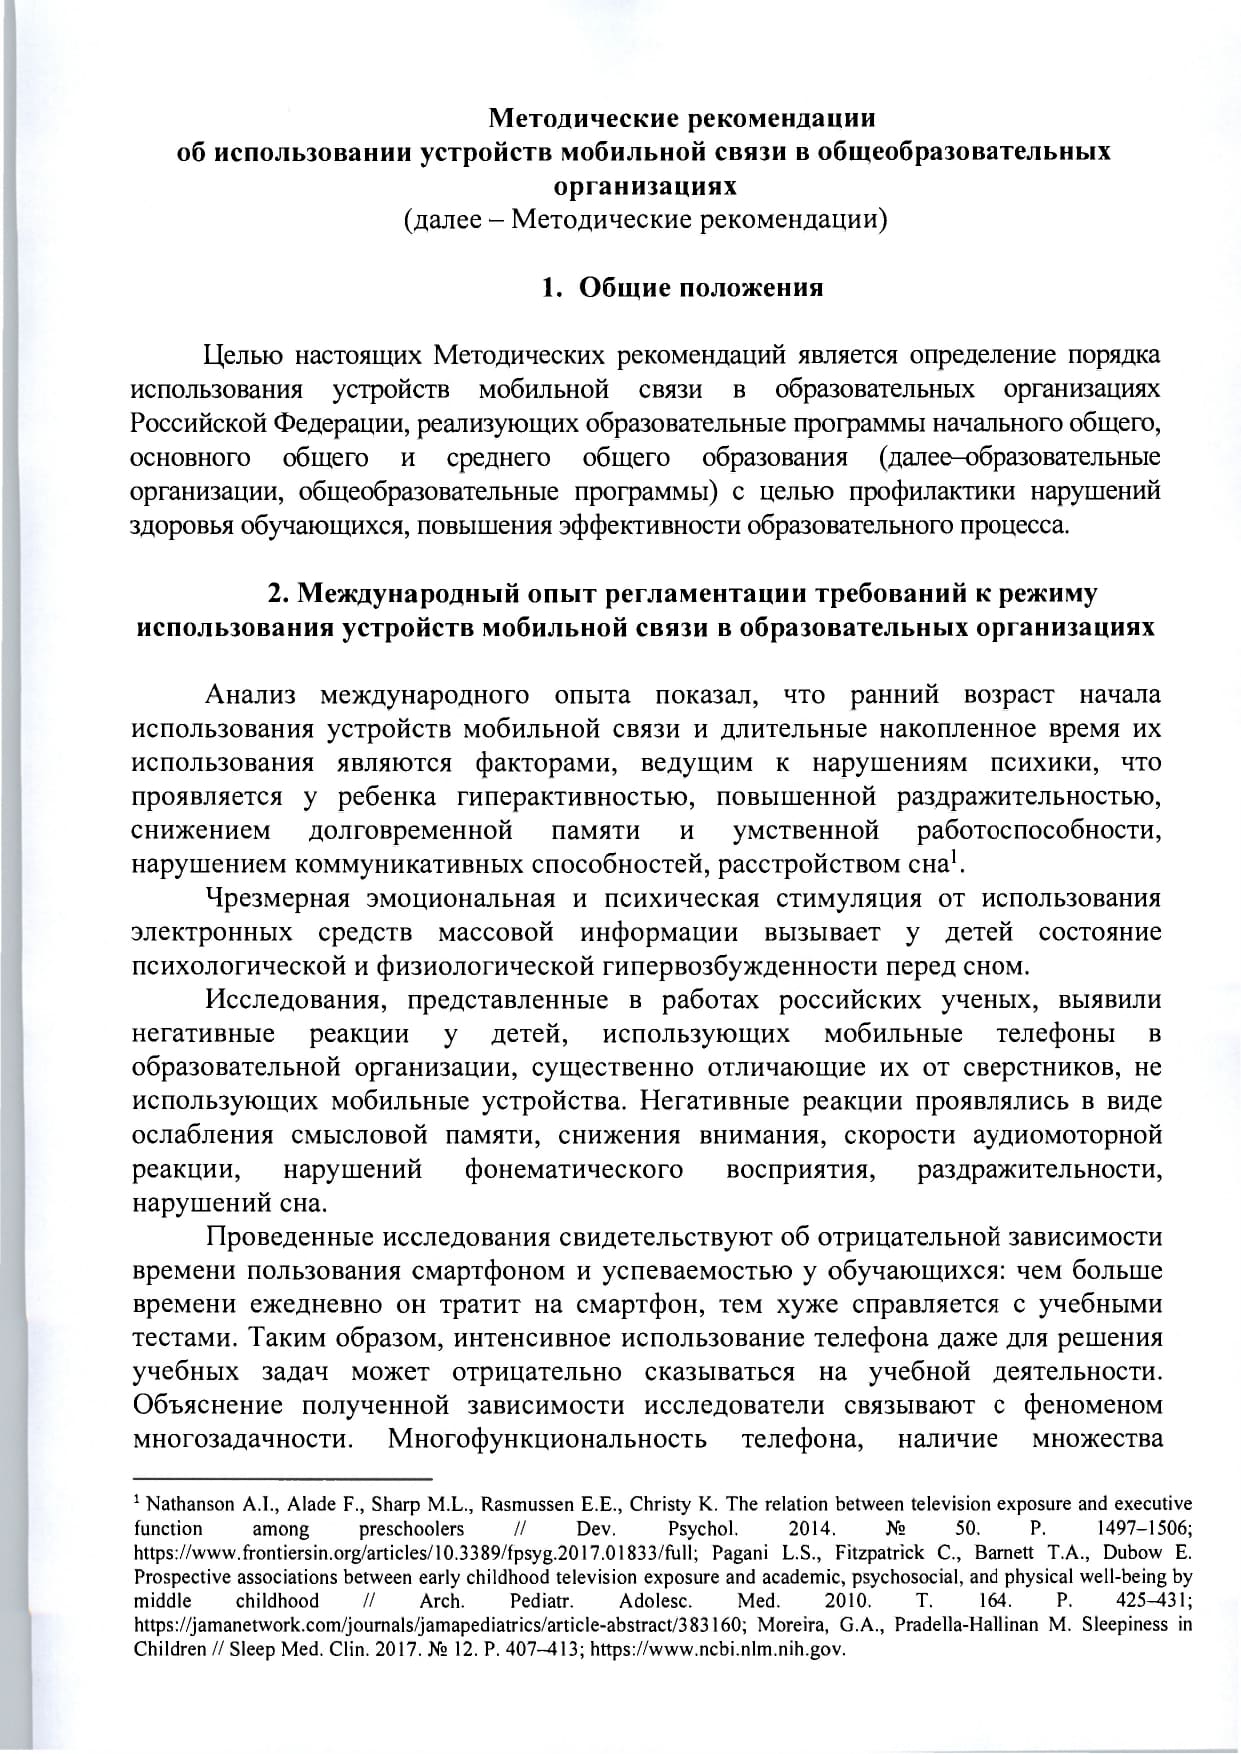 mr-telefony-v-obrazovatelnykh-org- 1  page-0003